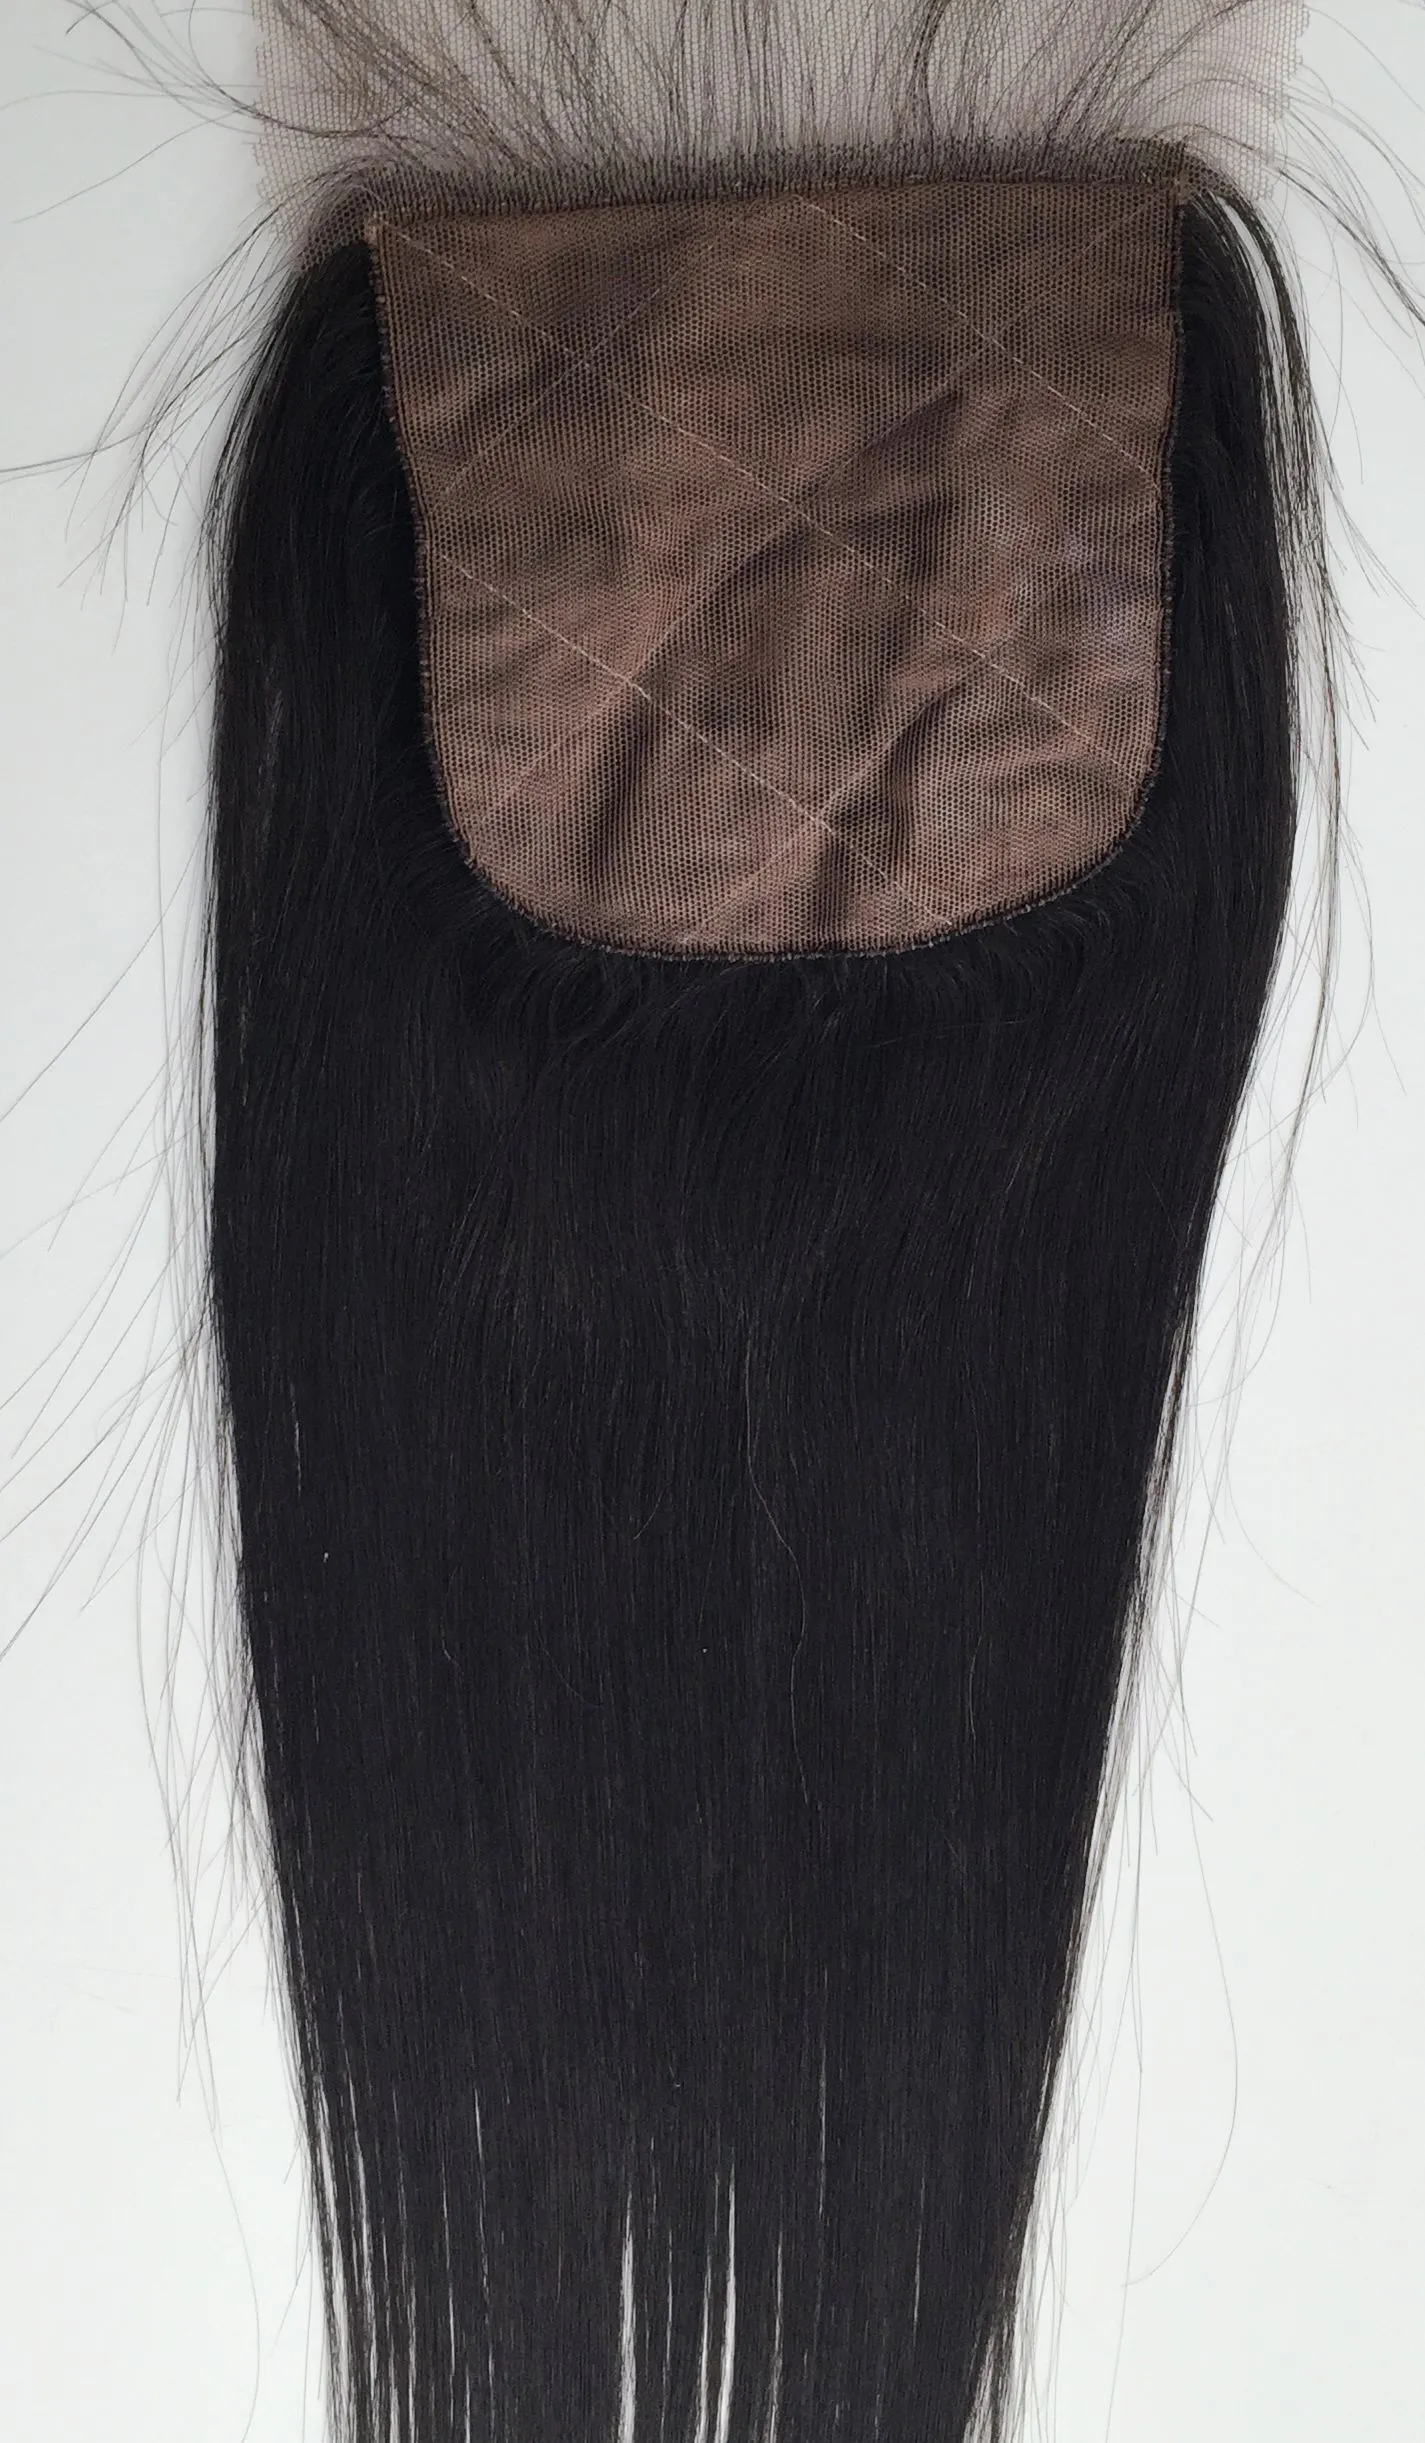 Jedwabny baza Brazylijska prosta koronkowa zamykanie włosy norki dziewiczy nieprzetworzone ludzkie włosy splot naturalny kolor najwyższej jakości